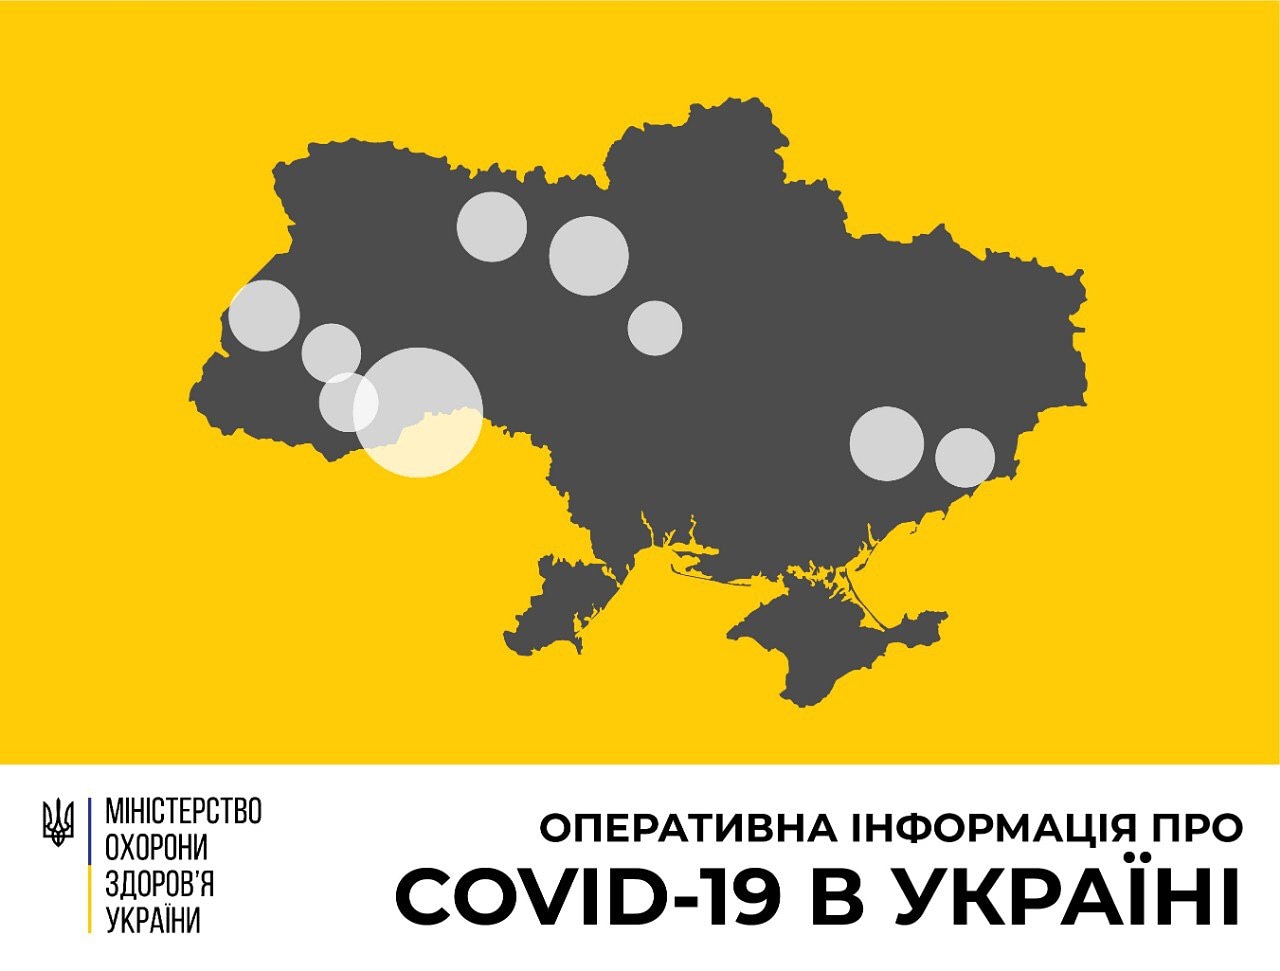 В Україні зафіксовано 196 випадків коронавірусної хвороби COVID-19 - МОЗ